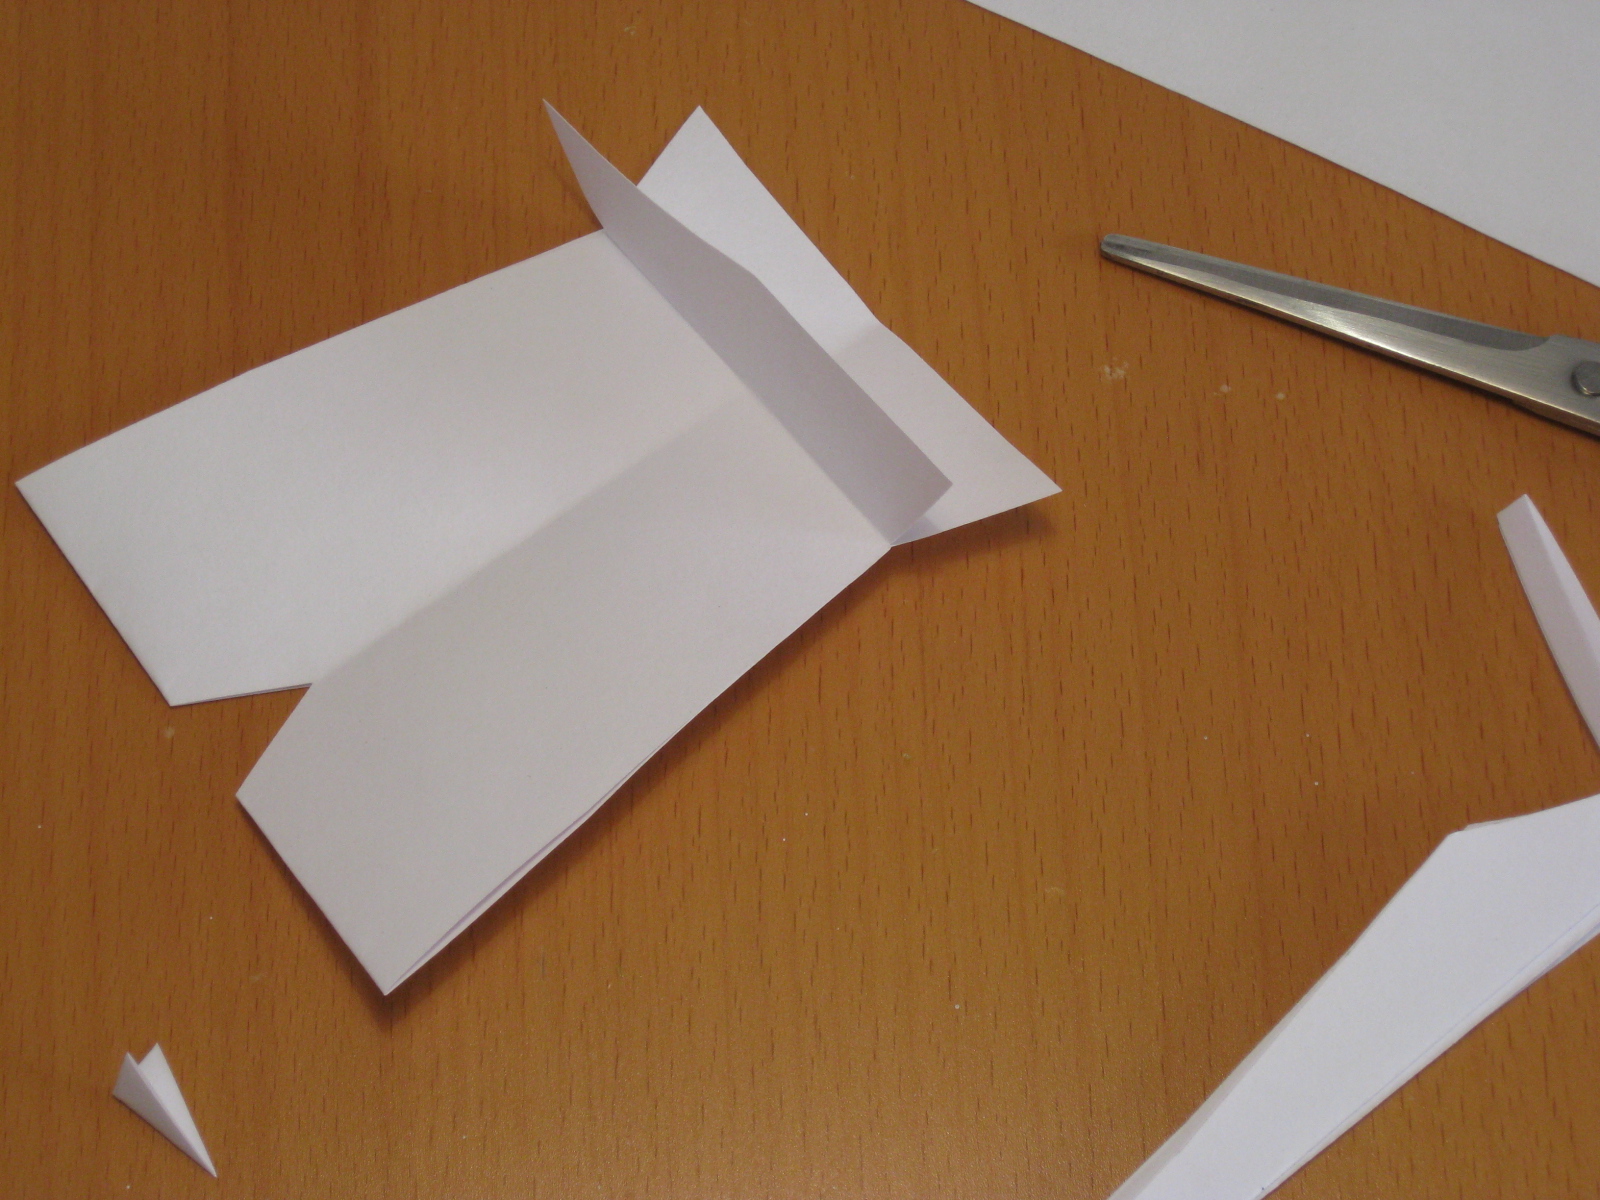 Cómo hacer un silbato de papel en Recicla Inventa